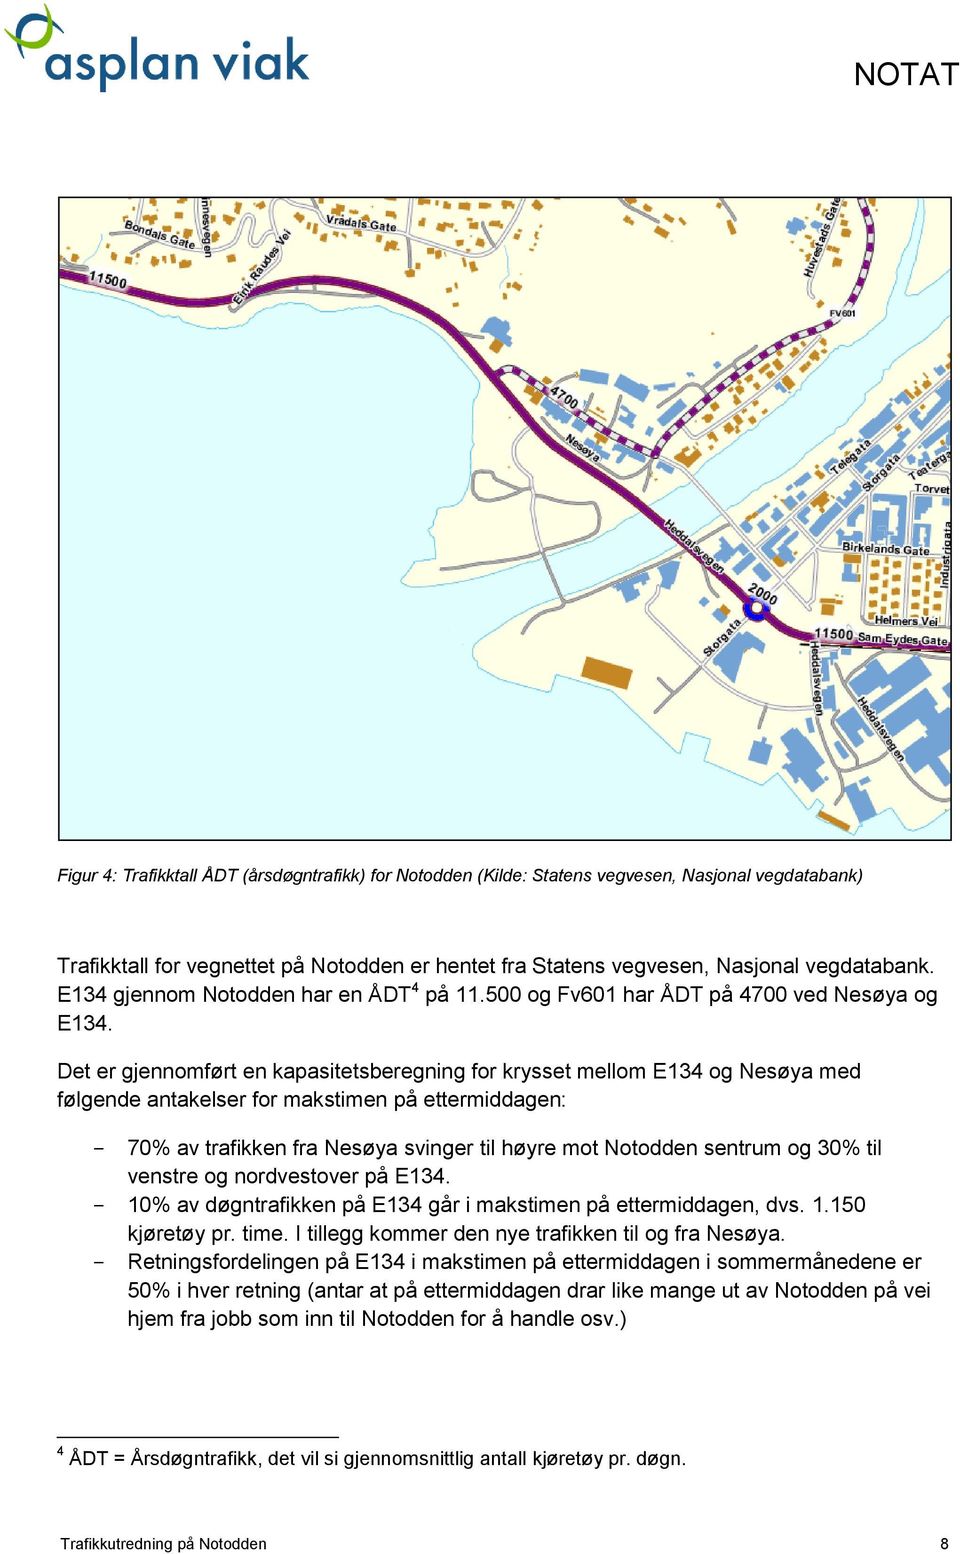 Det er gjennomført en kapasitetsberegning for krysset mellom E134 og Nesøya med følgende antakelser for makstimen på ettermiddagen: - 70% av trafikken fra Nesøya svinger til høyre mot Notodden